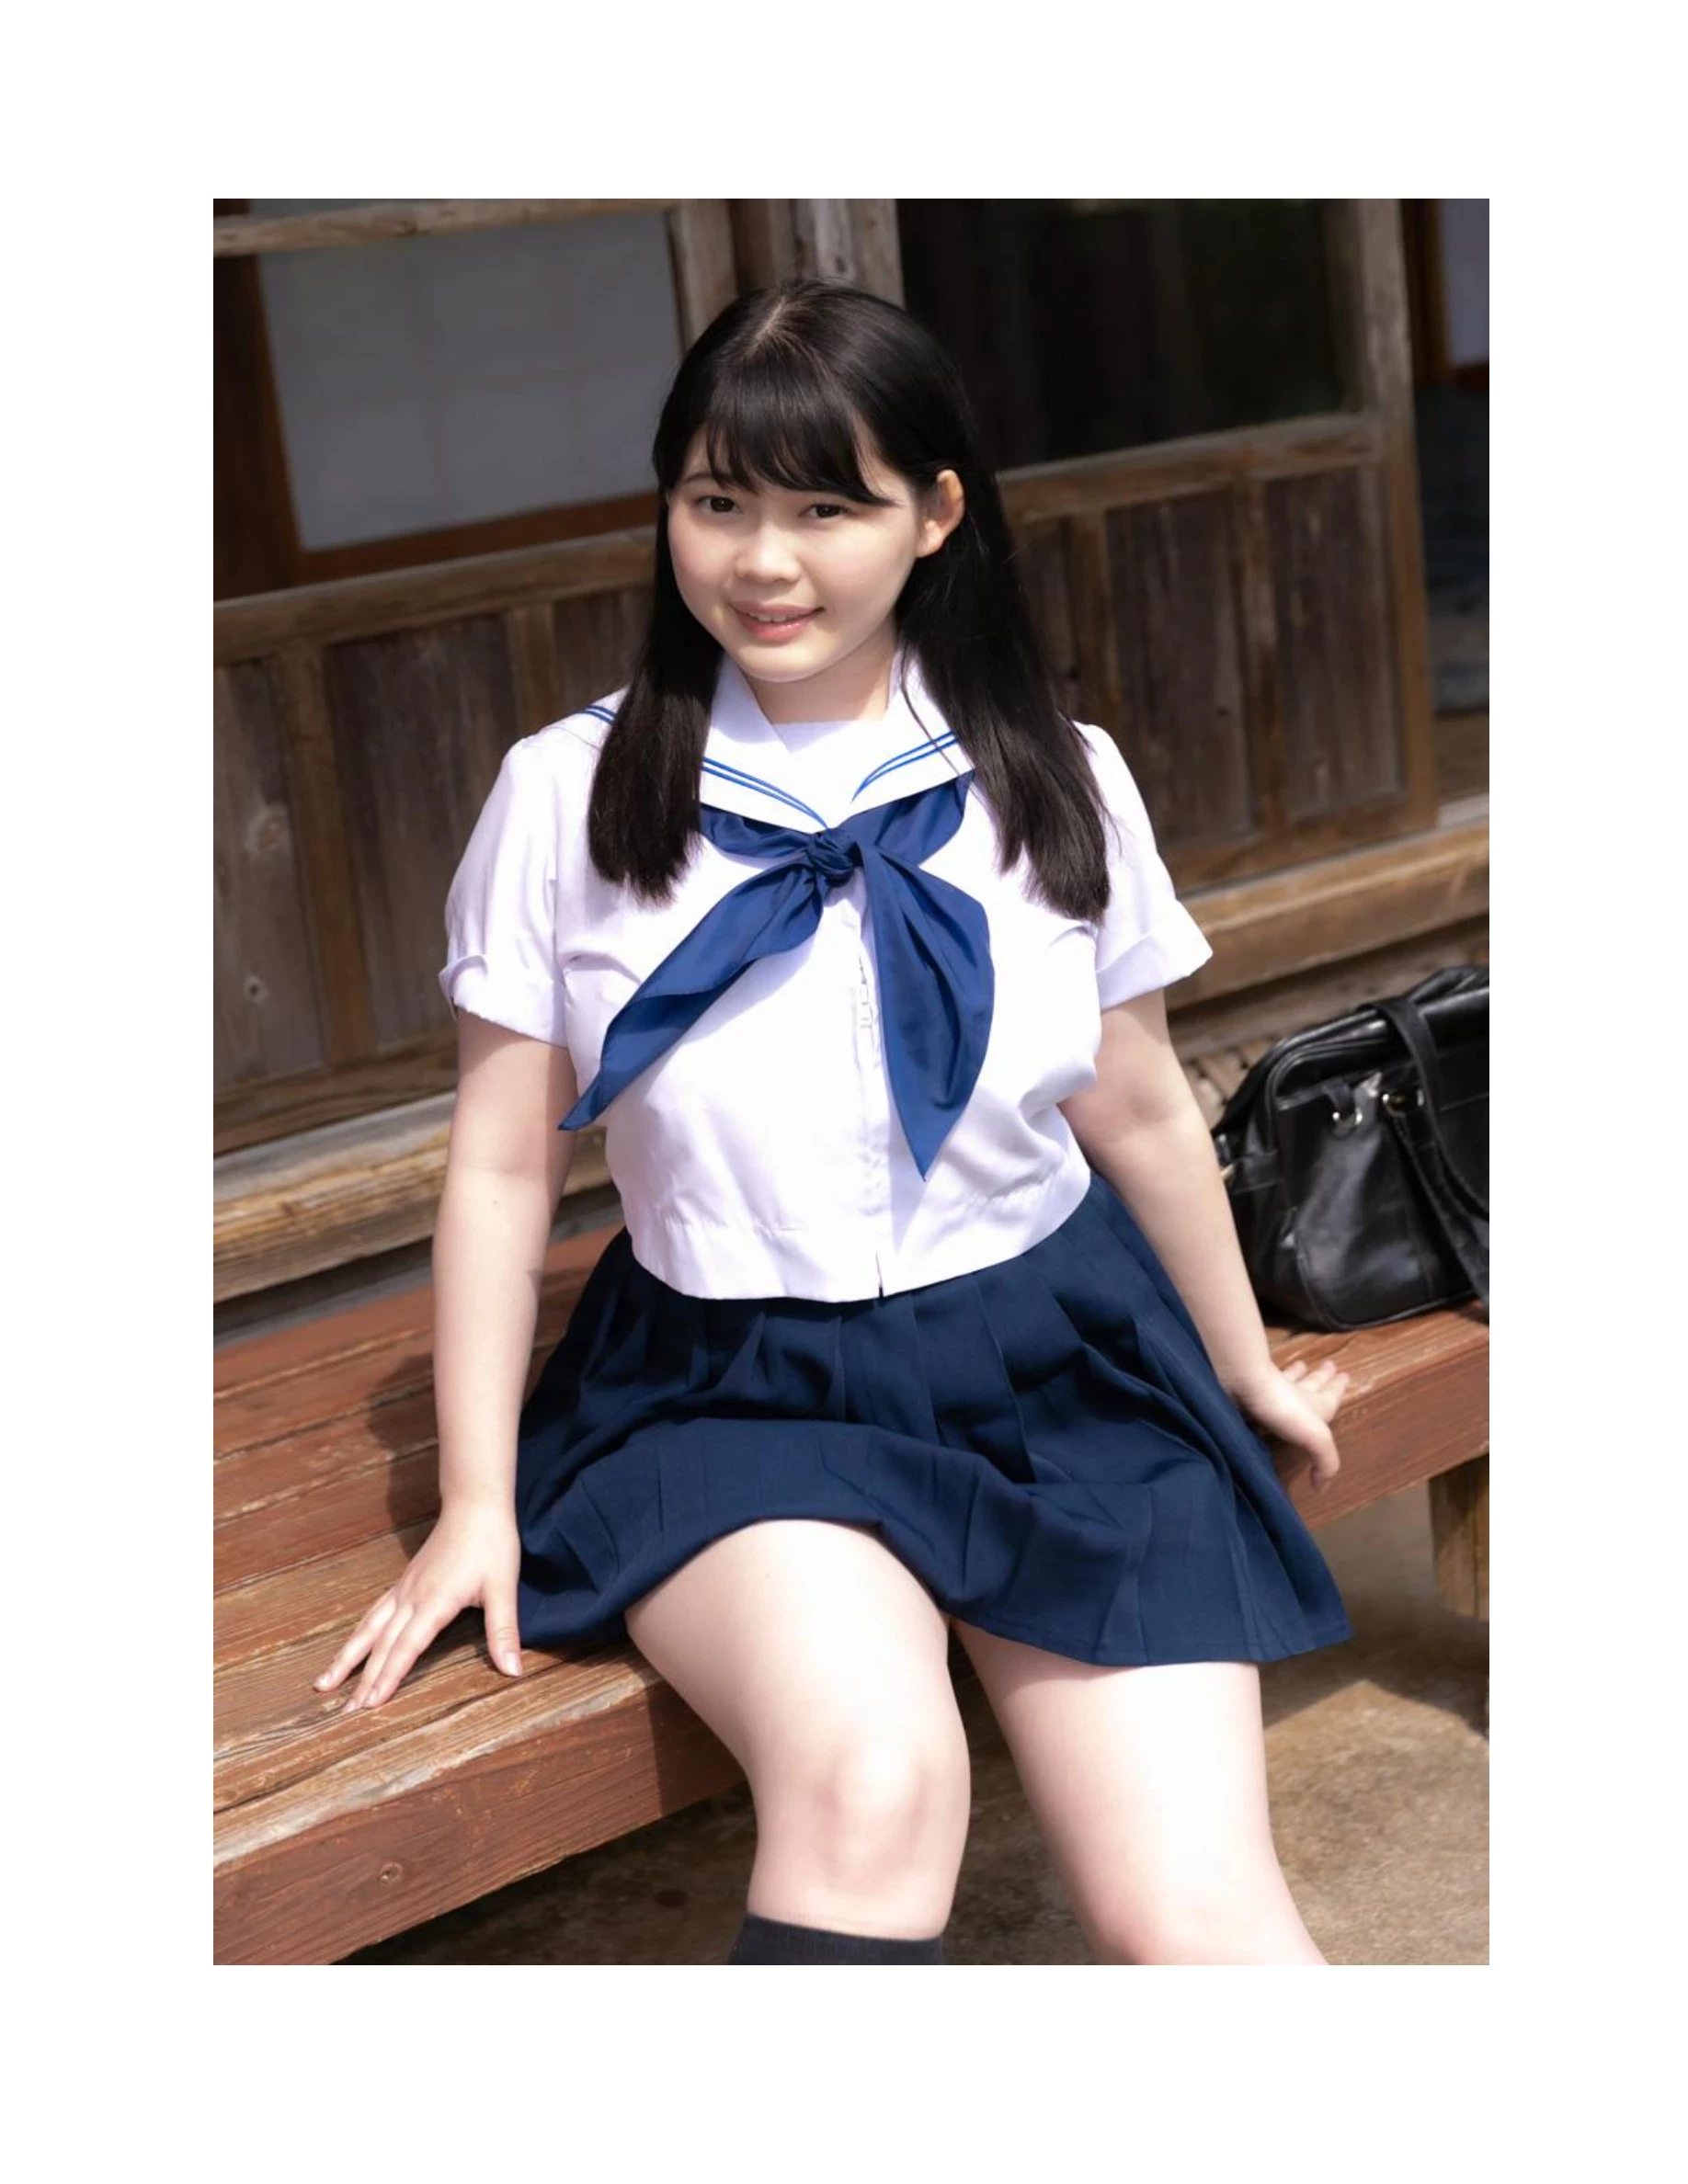 伊川愛梨 卒業旅行 夏 寫真集 J罩杯偶像美少女傳説-39